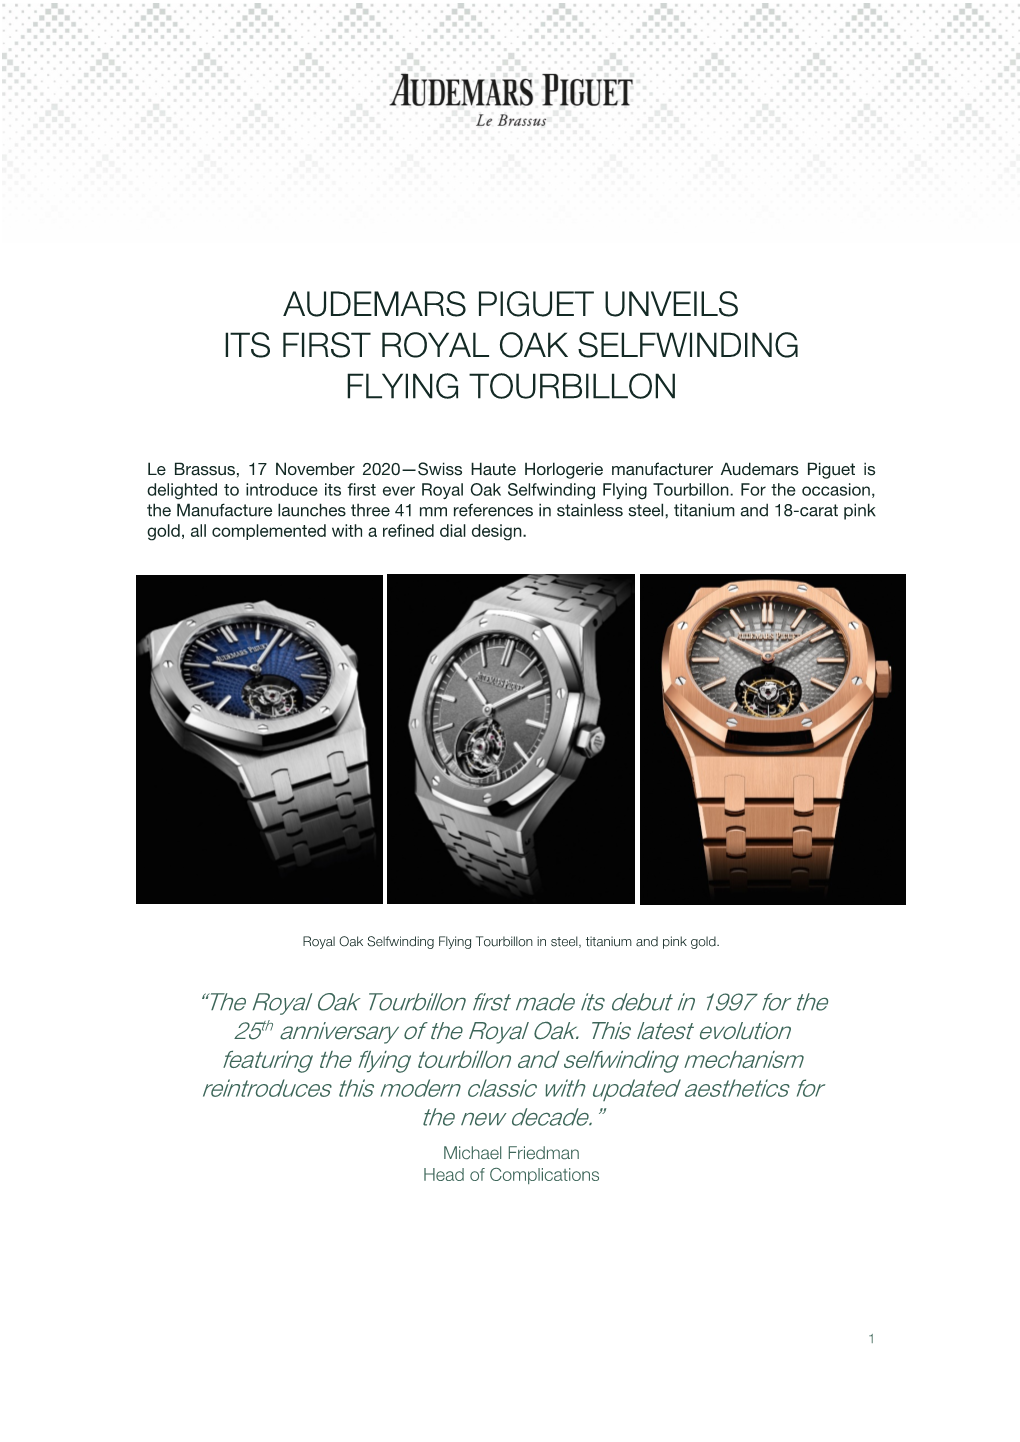 Audemars Piguet Unveils Its First Royal Oak Selfwinding Flying Tourbillon